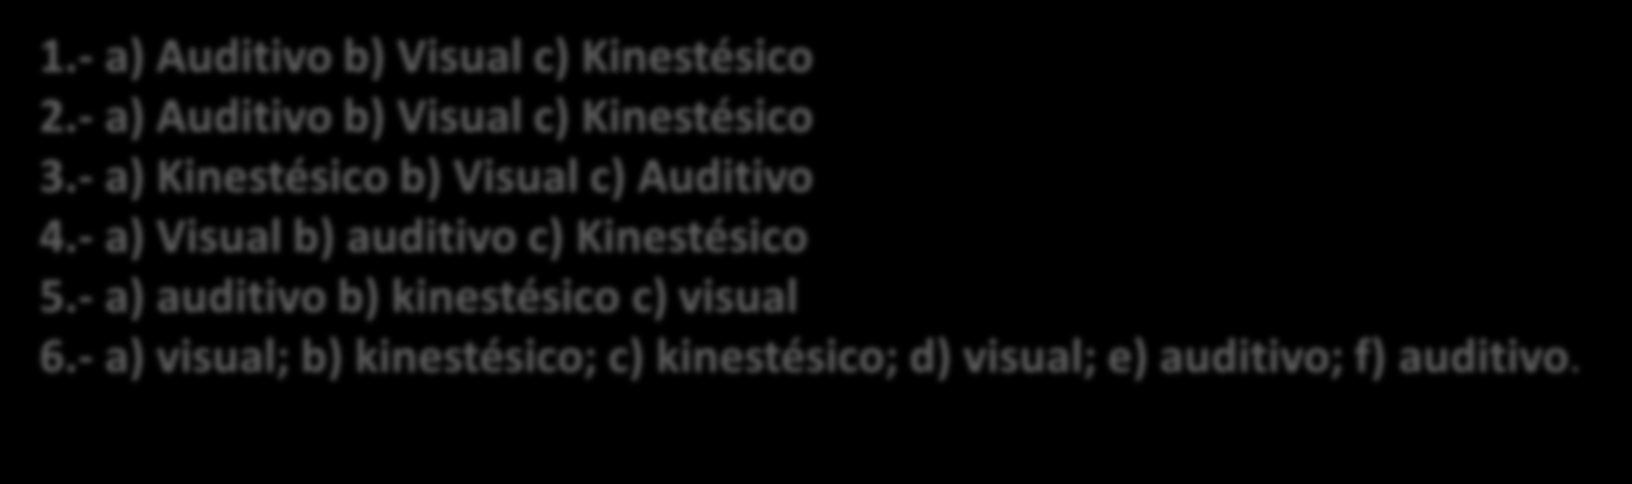 RESULTADOS Determina tu Estilo de acuerdo a las respuestas dadas 1.- a) Auditivo b) Visual c) Kinestésico 2.- a) Auditivo b) Visual c) Kinestésico 3.- a) Kinestésico b) Visual c) Auditivo 4.